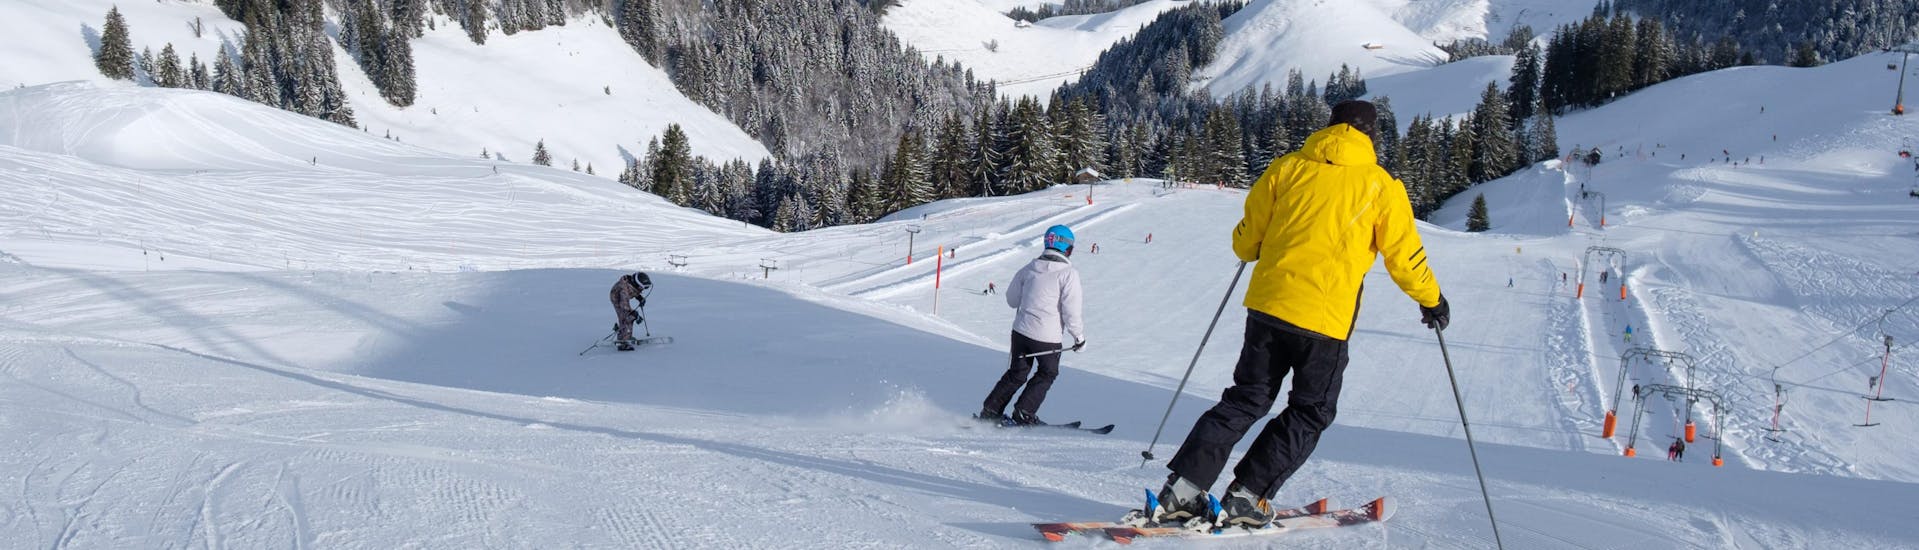 Mehrere Skifahrer fahren auf einer frisch präparierten Piste im schweizerischen Skigebiet Charmey, einem beliebten Ort für angehende Skifahrer die bei einer örtlichen Skischule einen Skikurs buchen wollen.